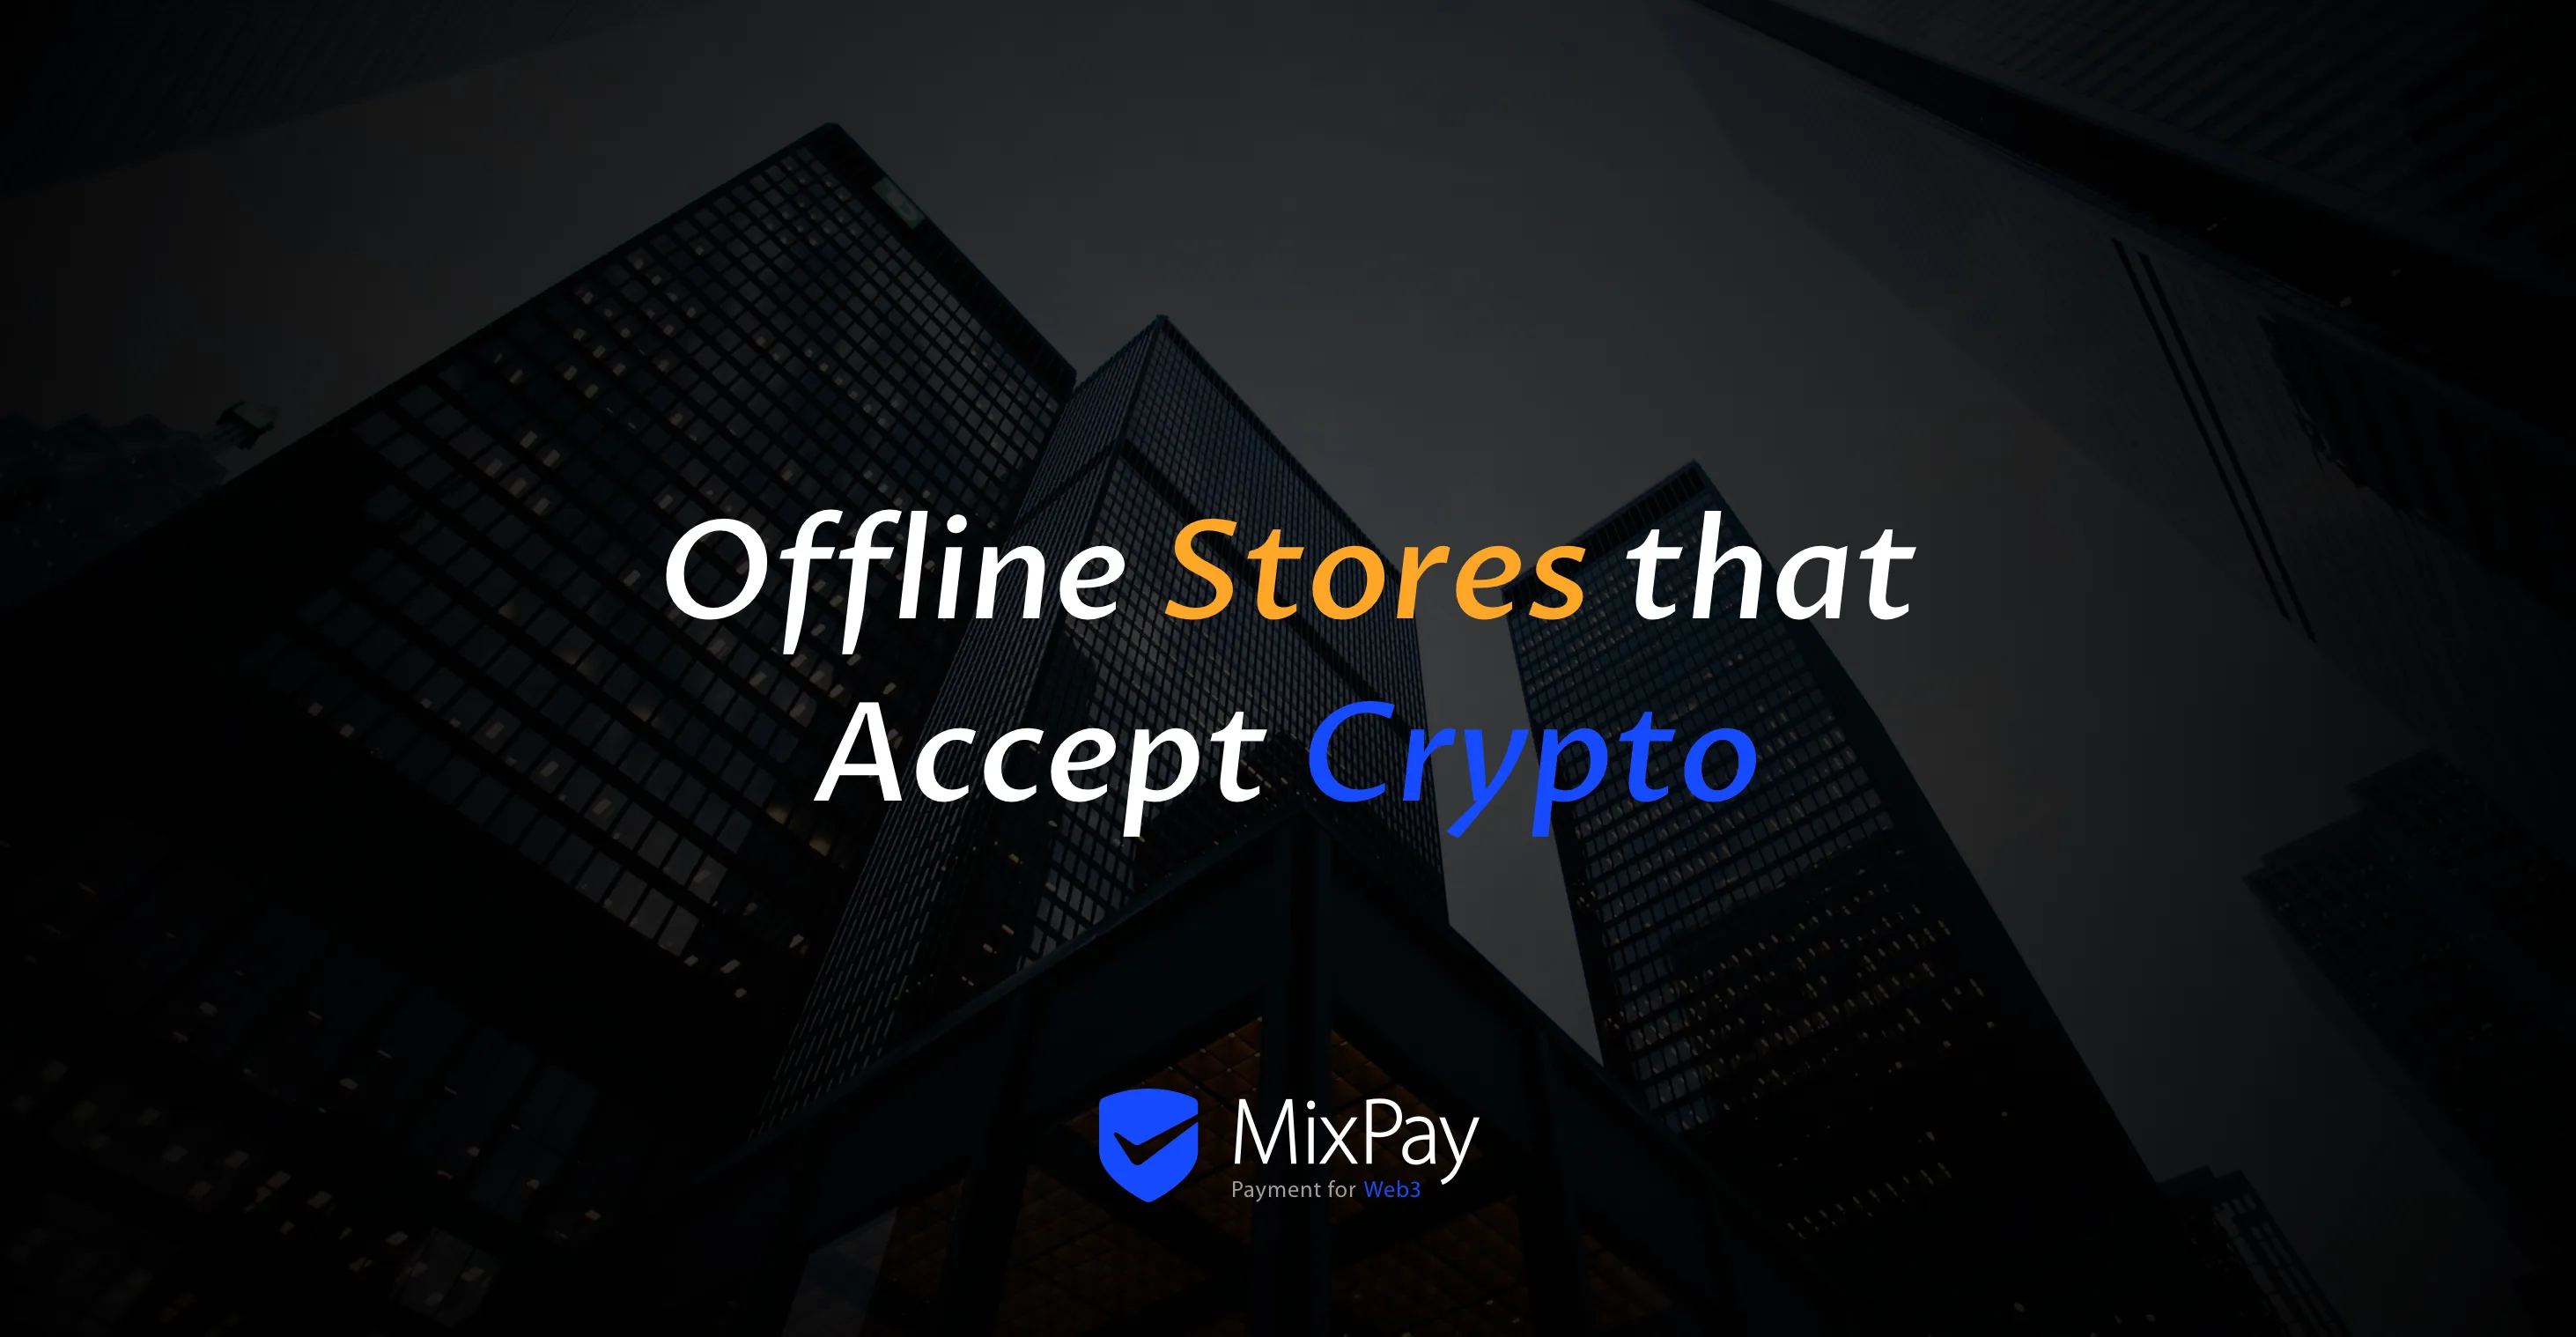 Offline üzletek, amelyek elfogadják a kriptovalutát a MixPay segítségével